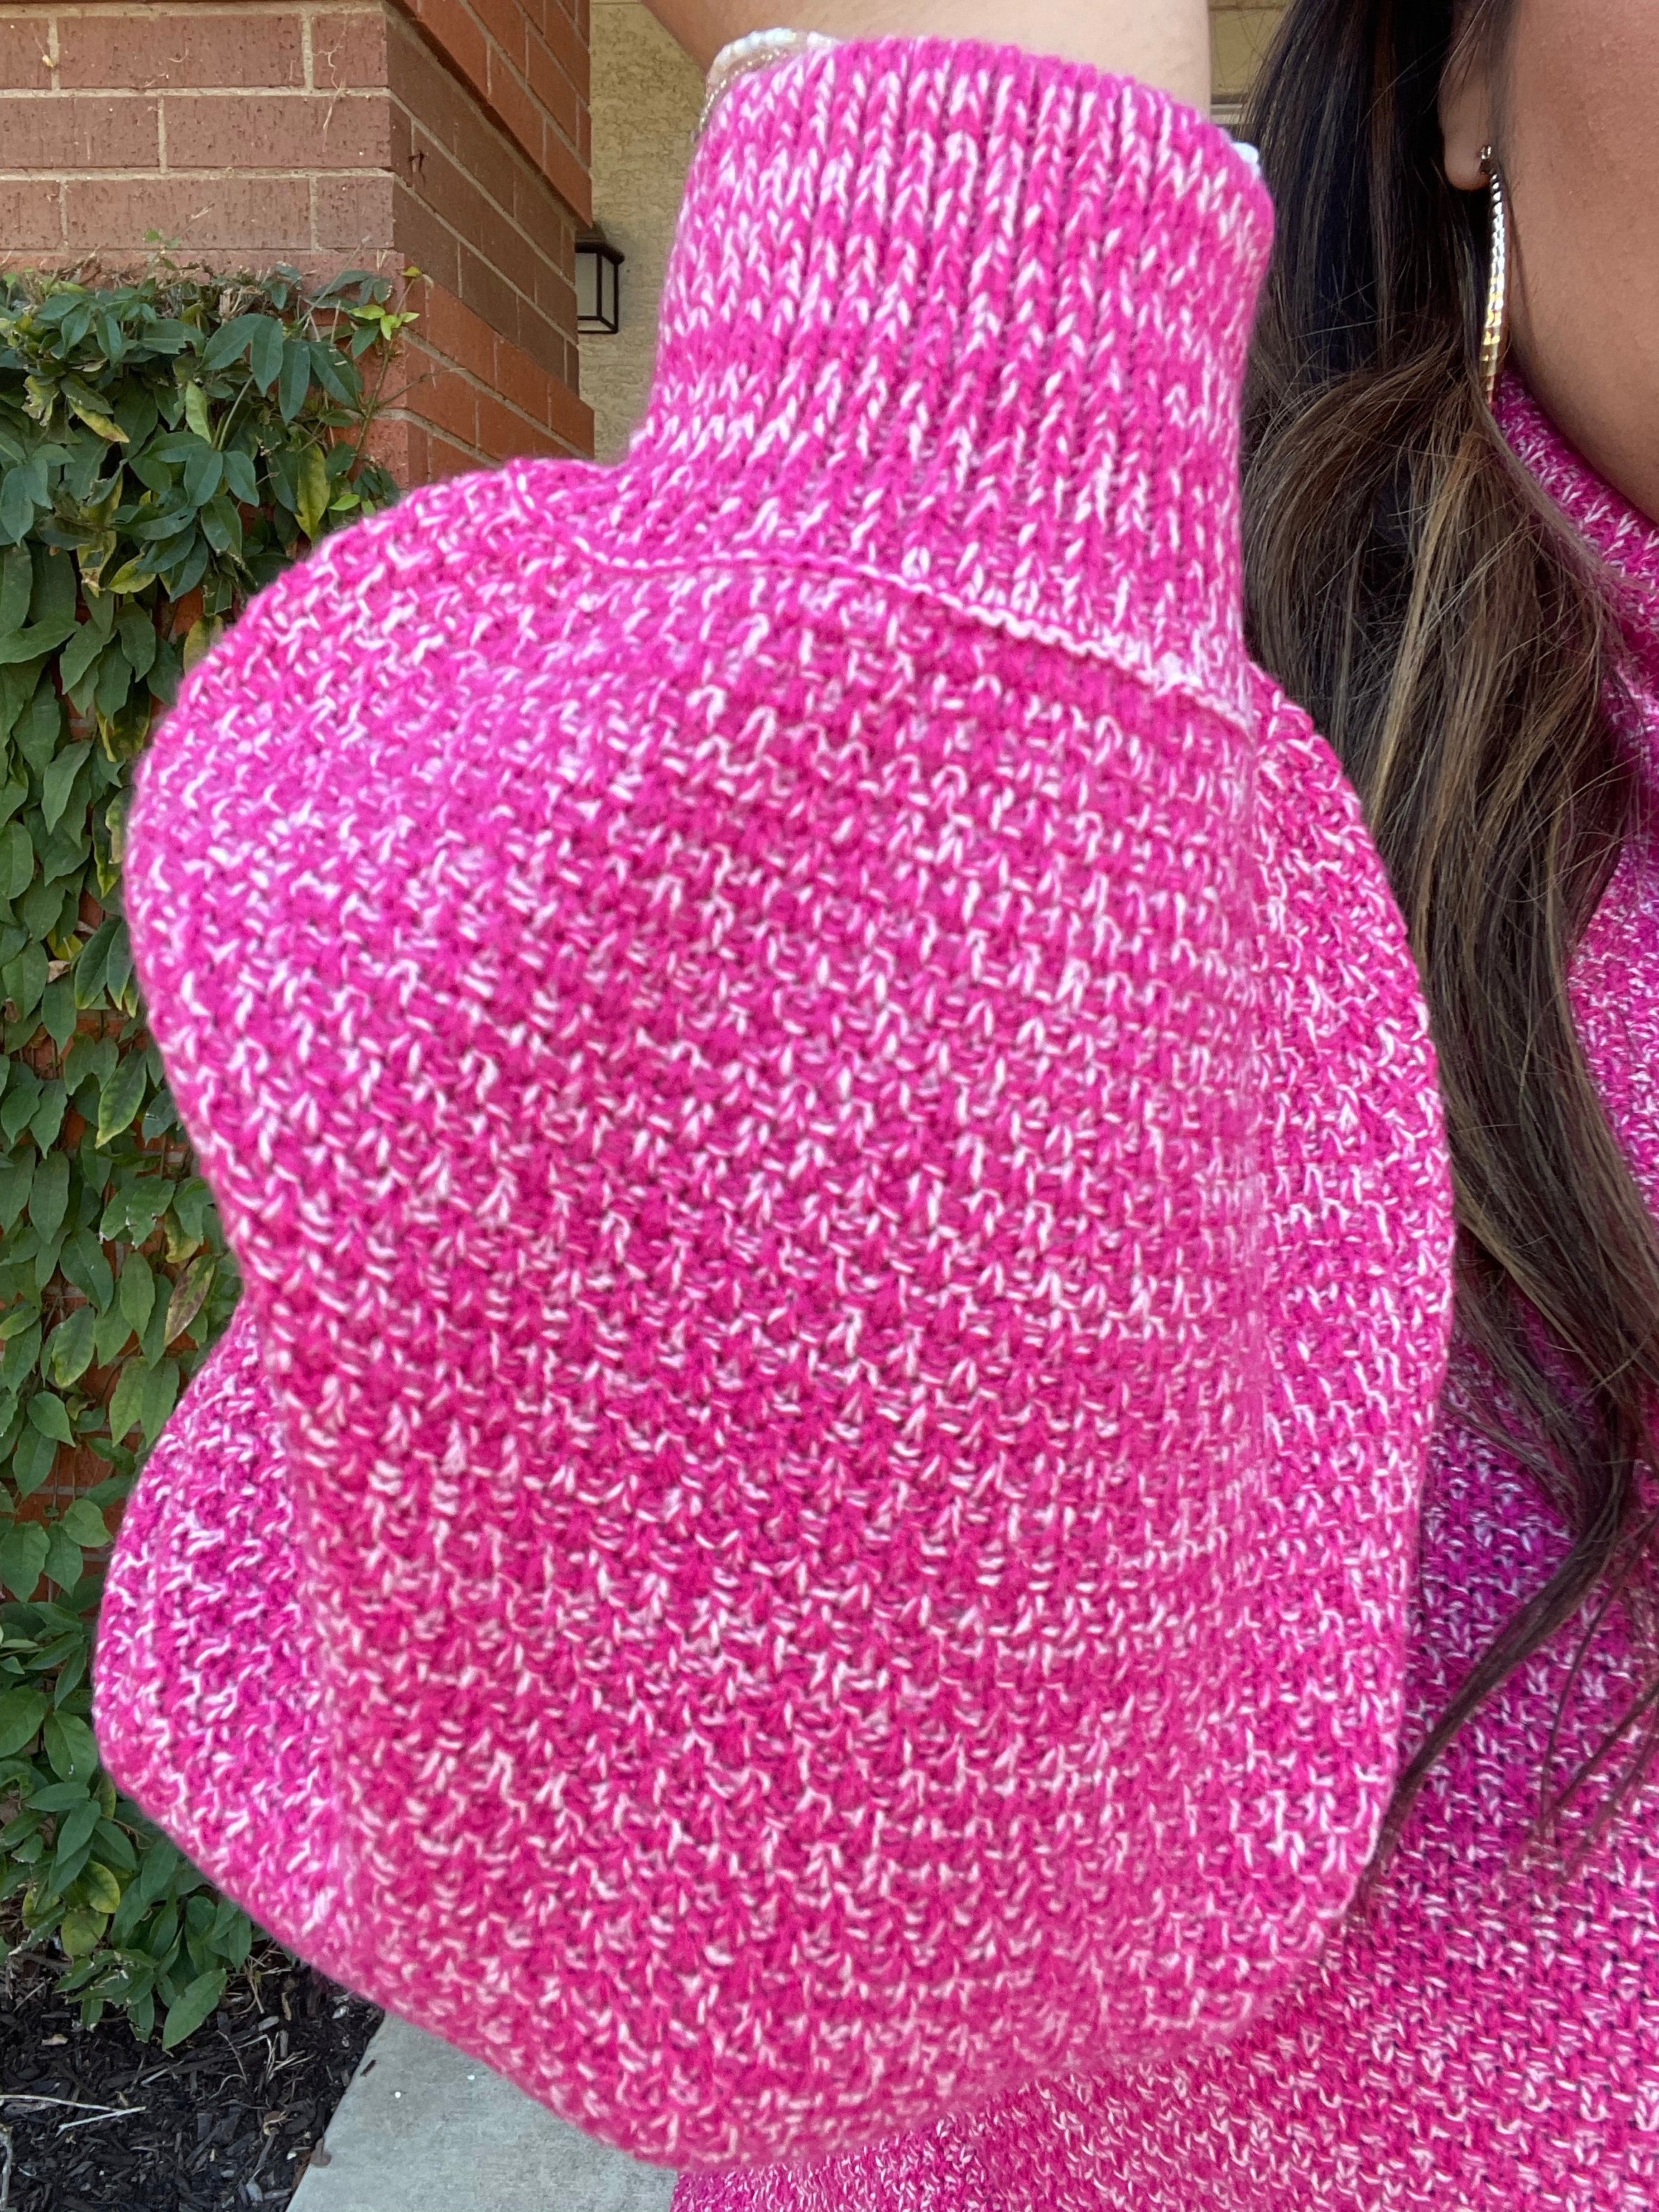 *SALE ITEM* Tickled Pink Turtleneck Sweater